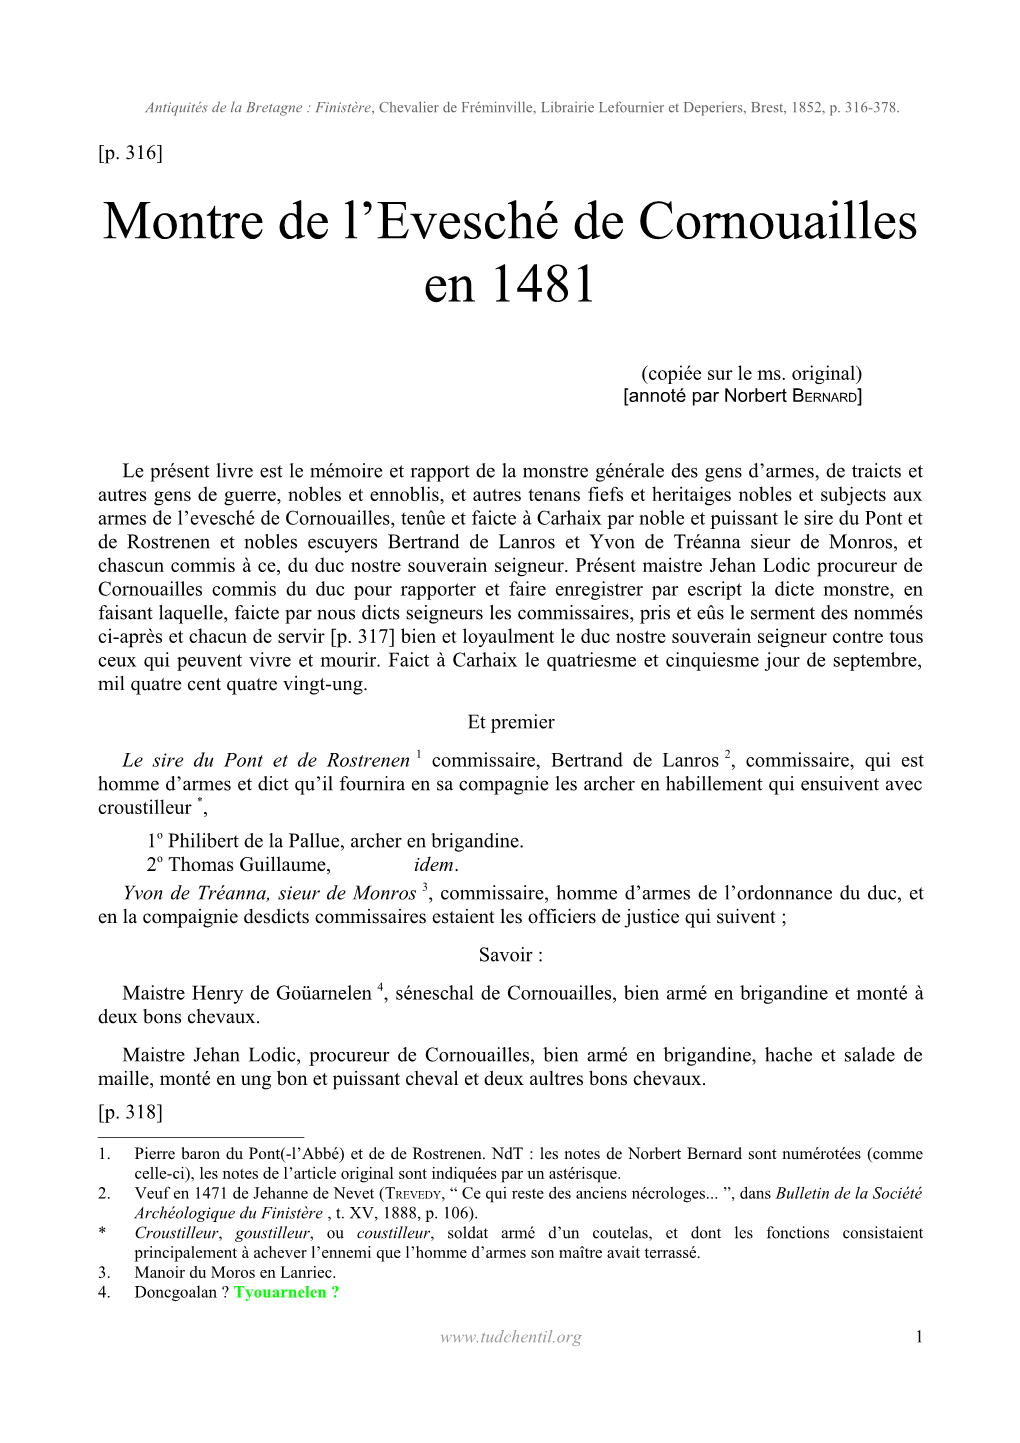 Montre De L'evesché De Cornouailles En 1481